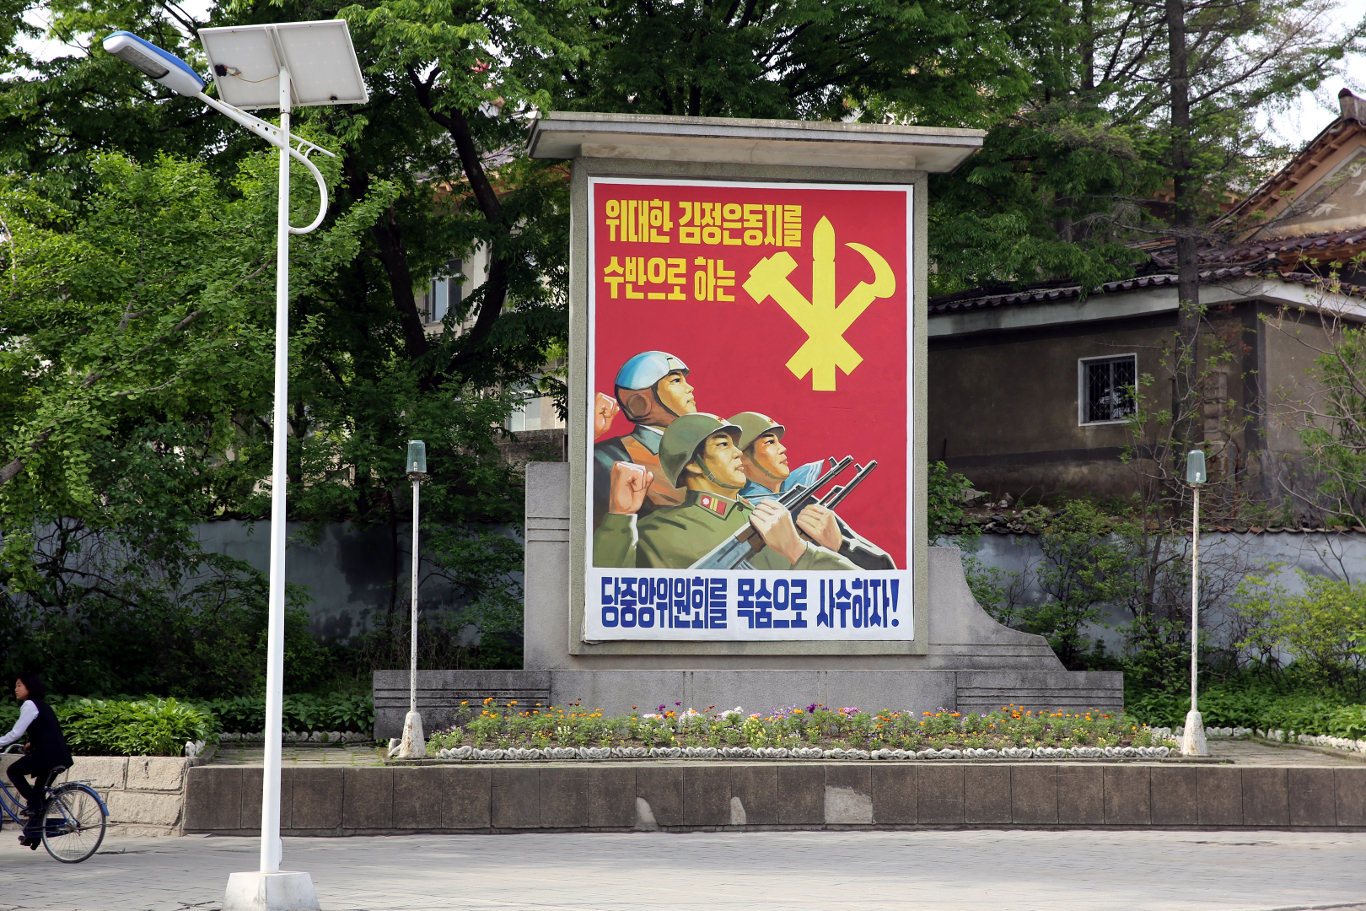 Affiche de propagande nord-coréenne devant l'hôtel traditionnel coréen à Kaesong, l'ancienne capitale de la dynastie Koryo située en Corée du Nord. Voyage organisé par KTG